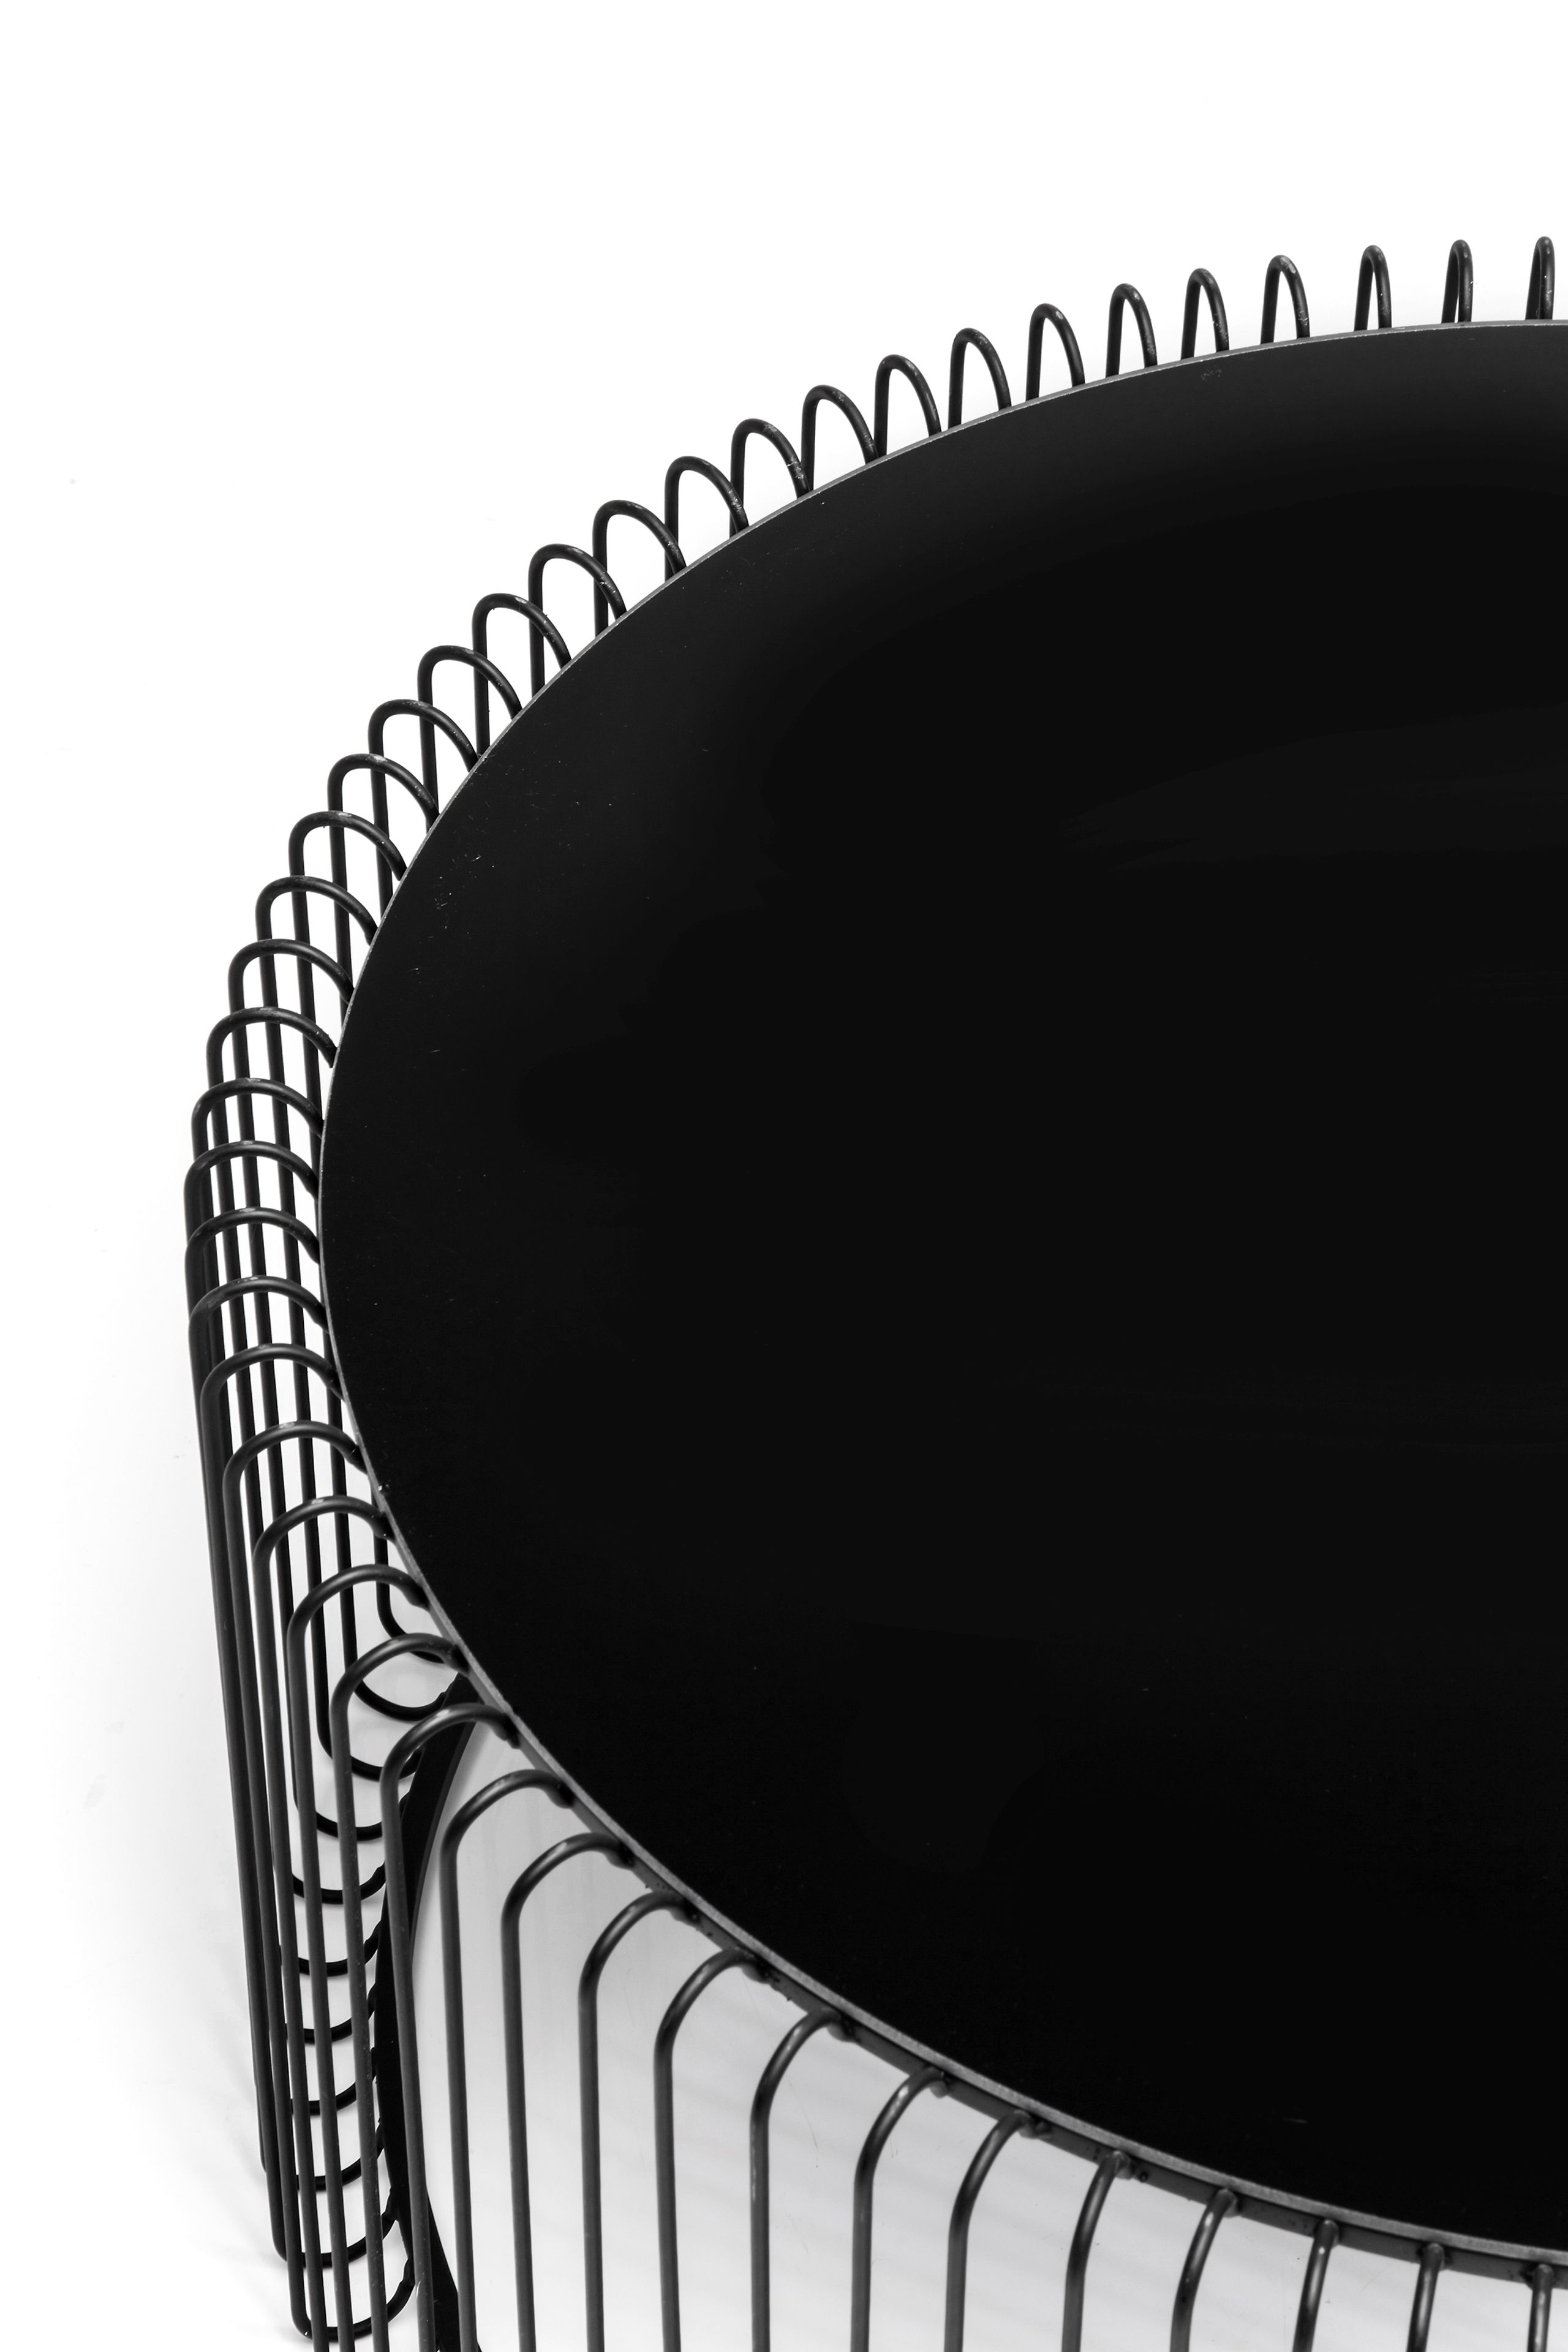 Couchtisch Wire Schwarz Flach Spiegelglasplatte 2 Größen